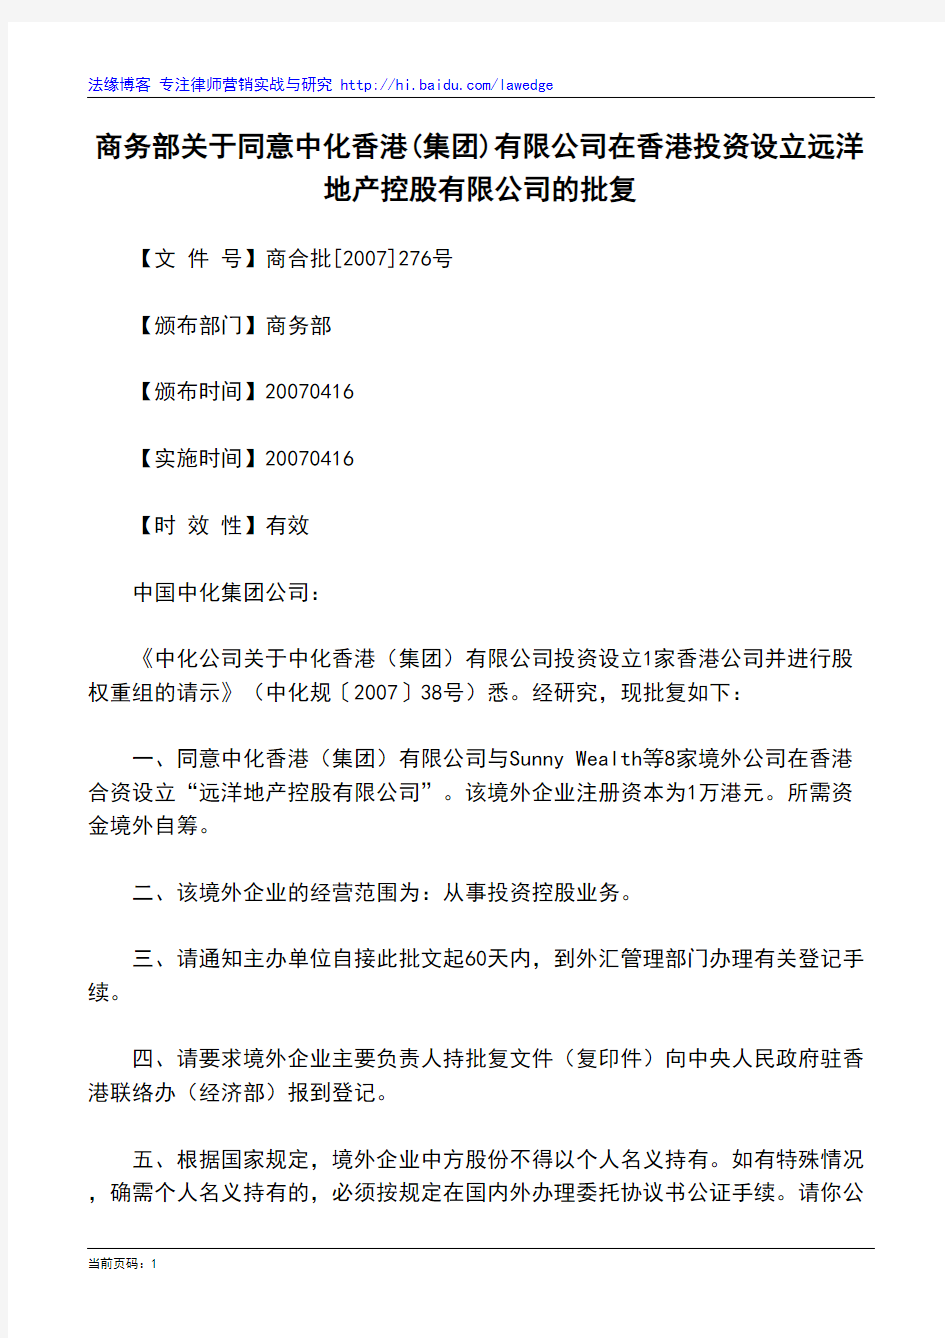 商务部关于同意中化香港(集团)有限公司在香港投资设立远洋地产控股有限公司的批复